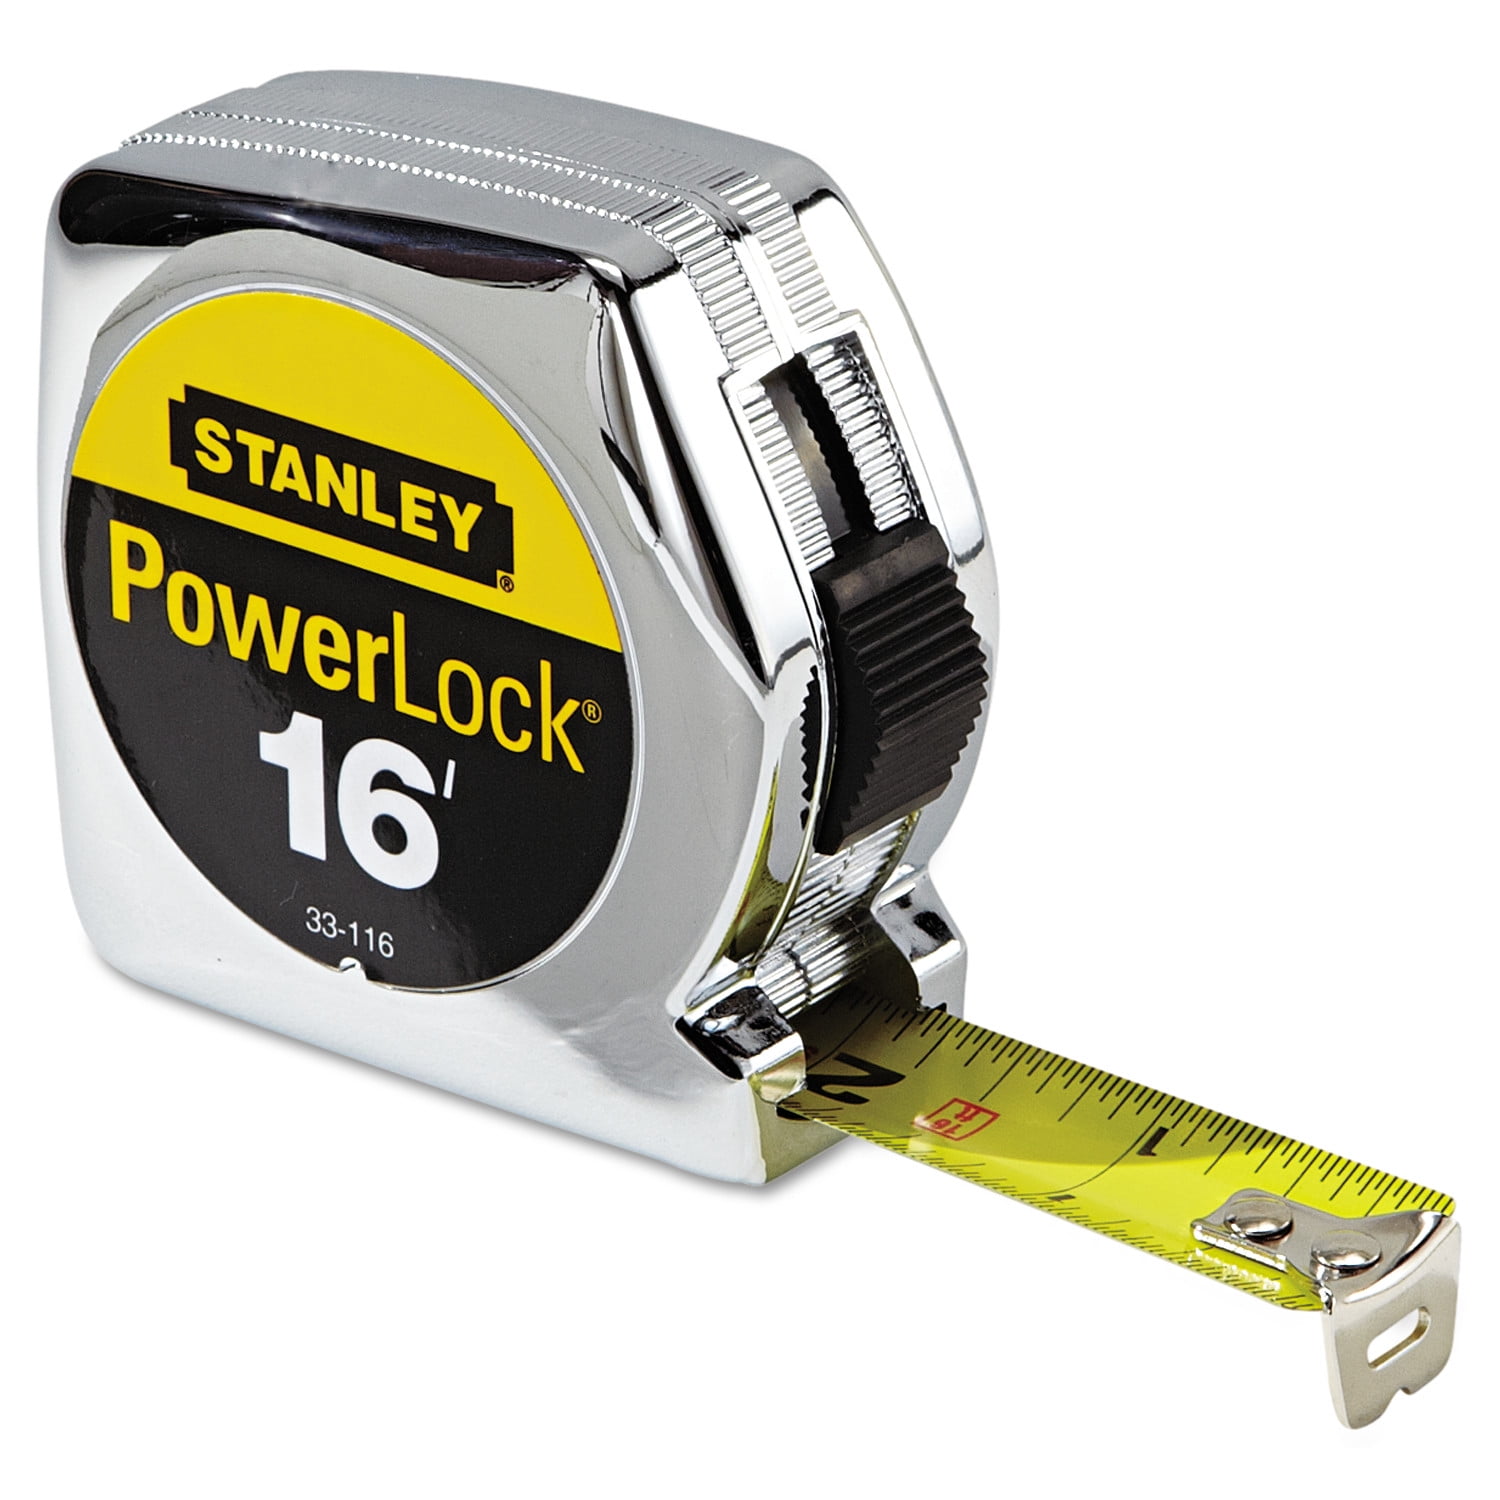 Stanley Hand Tools 33-115 10' x 1/4" PowerLock Pocket Tape Rule